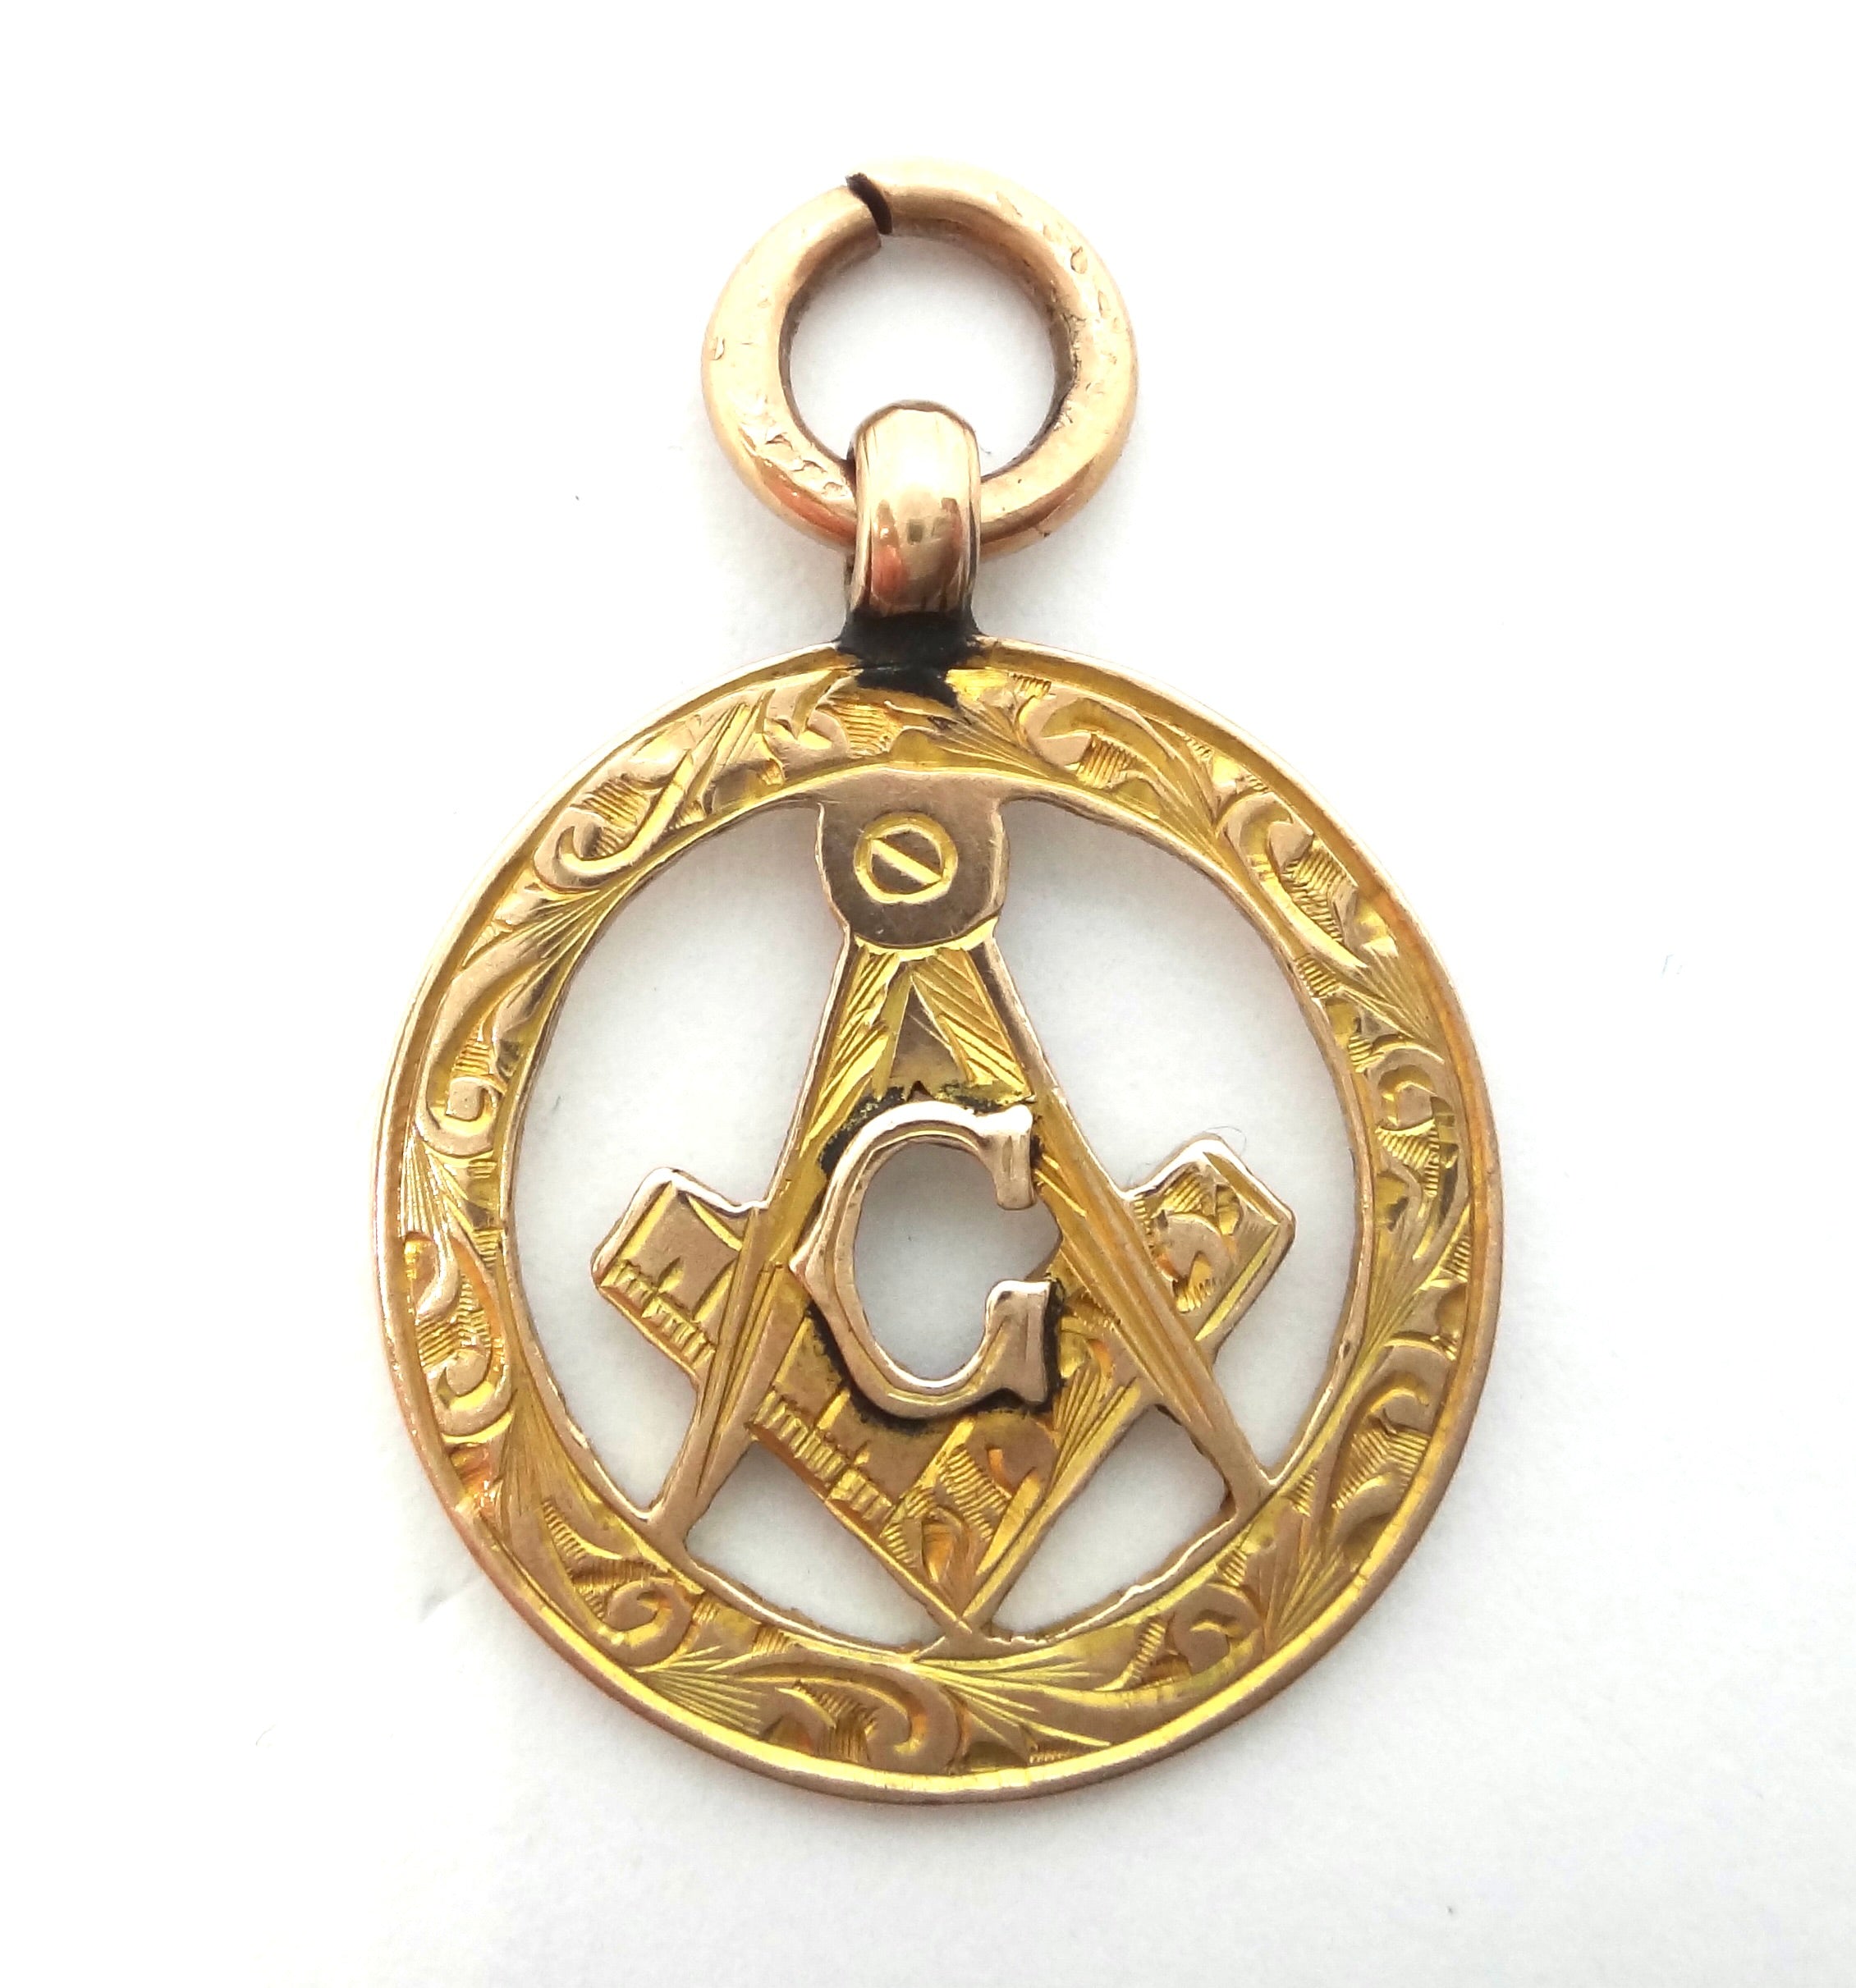 ANTIQUE 9ct GOLD Masonic Fob Pendant - Birmingham 1913